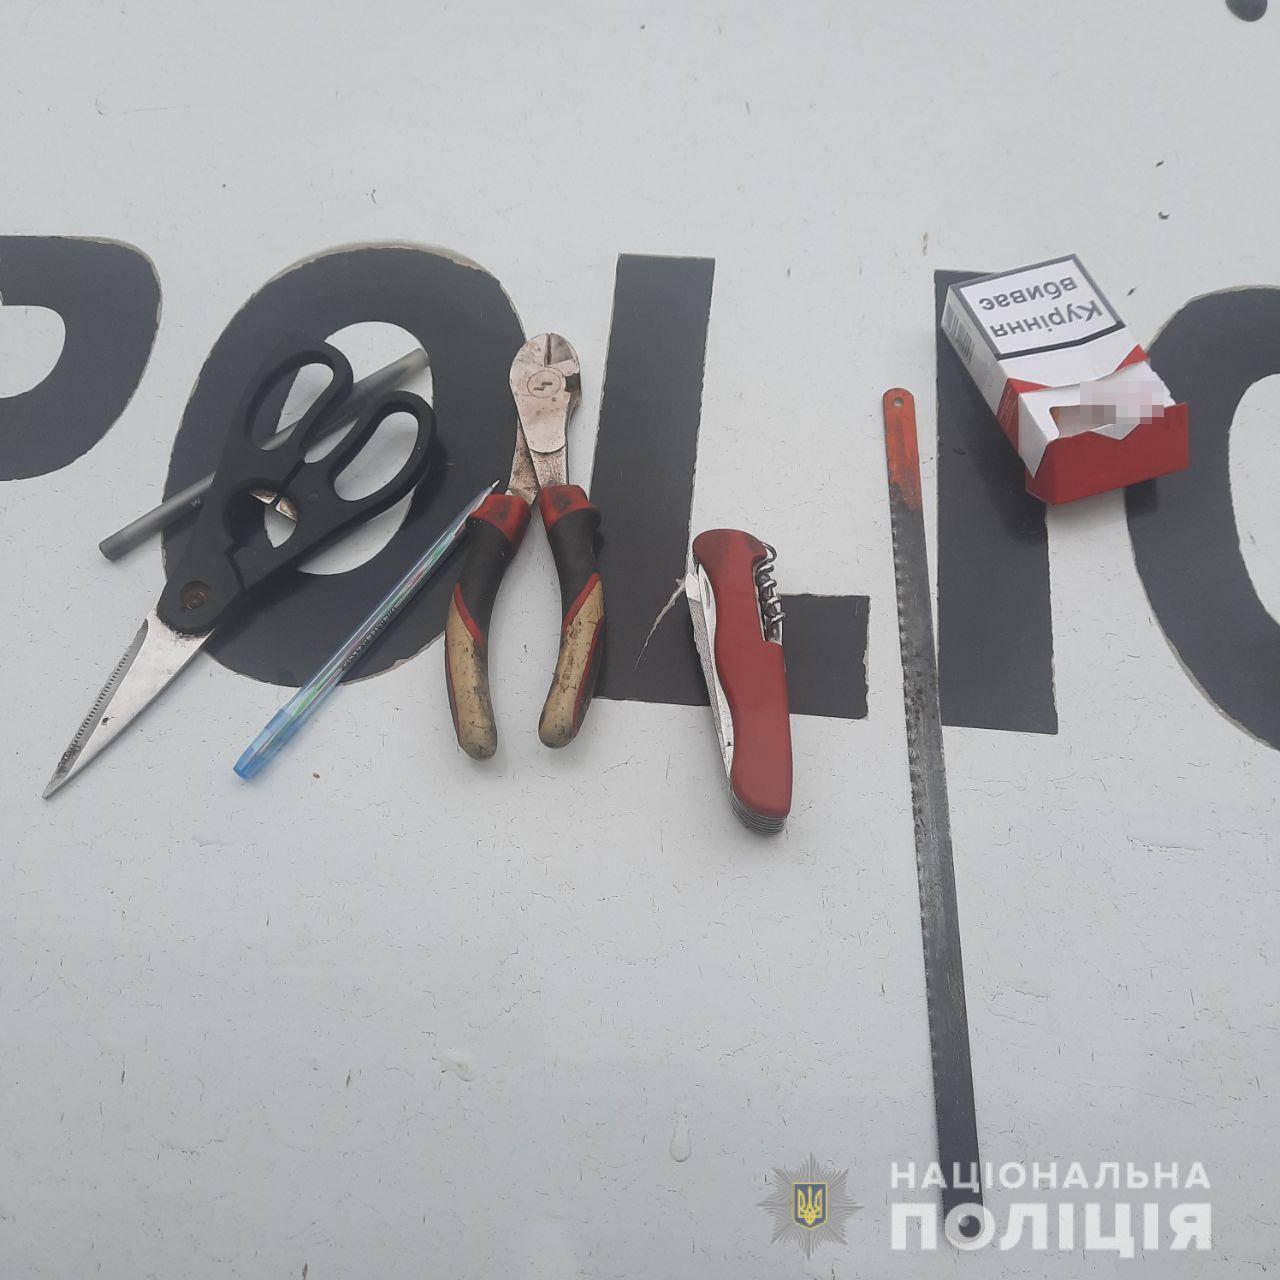 Поліцейські викрили трьох жителів Одещини у крадіжках з нафтопереробного заводу та автомобілів